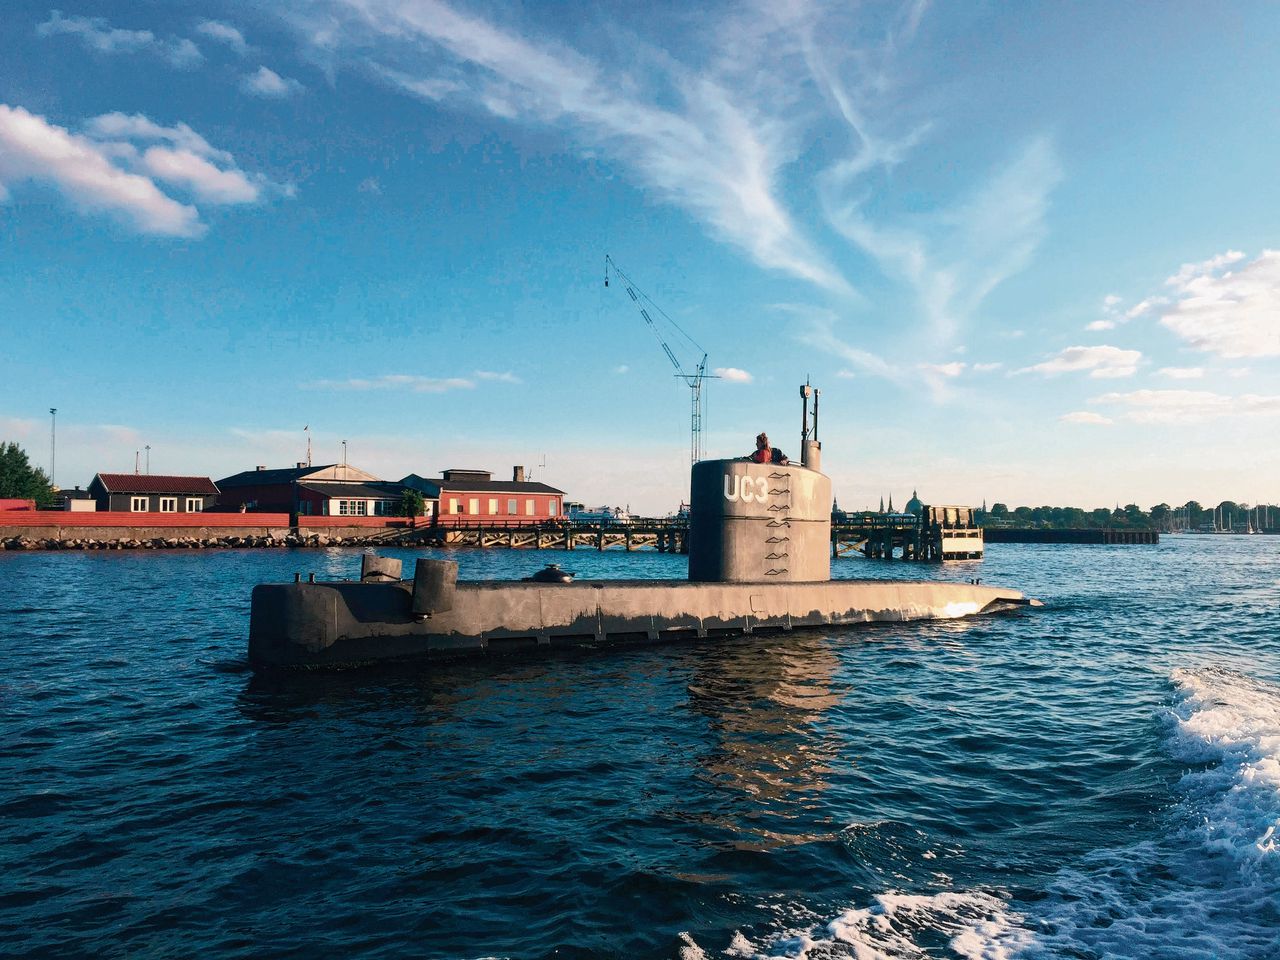 De privé-onderzeeër van de Deense uitvinder Peter Madsen, gefotografeerd op de dag dat Kim Wall verdween. De vrouw in de toren van de onderzeeboot is vermoedelijk Wall.